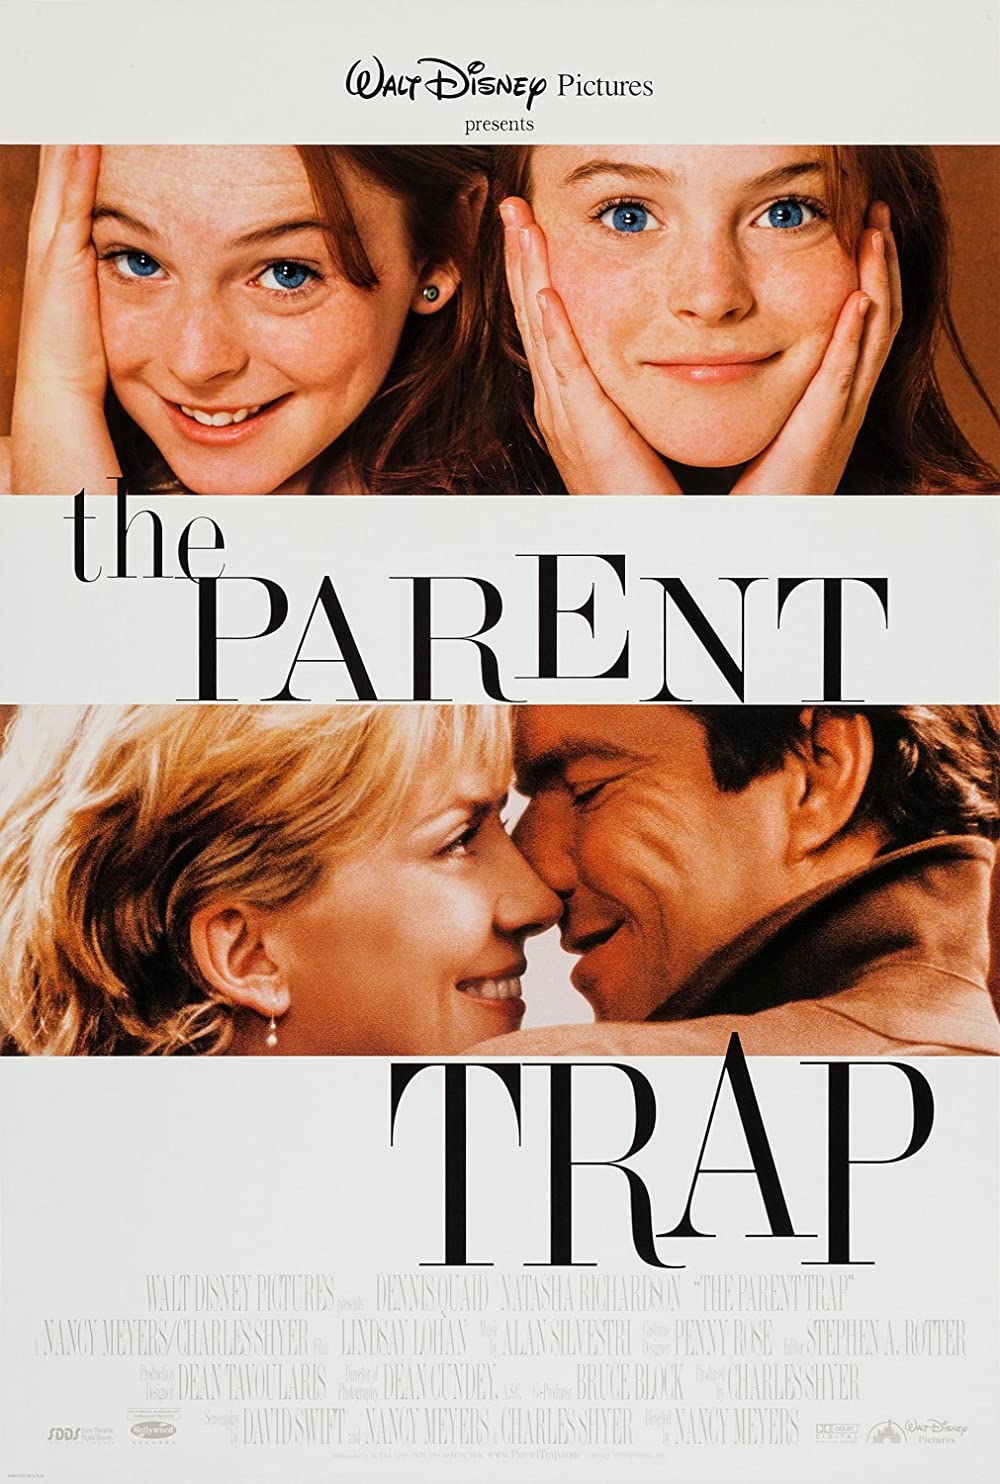 Filmbeschreibung zu The Parent Trap